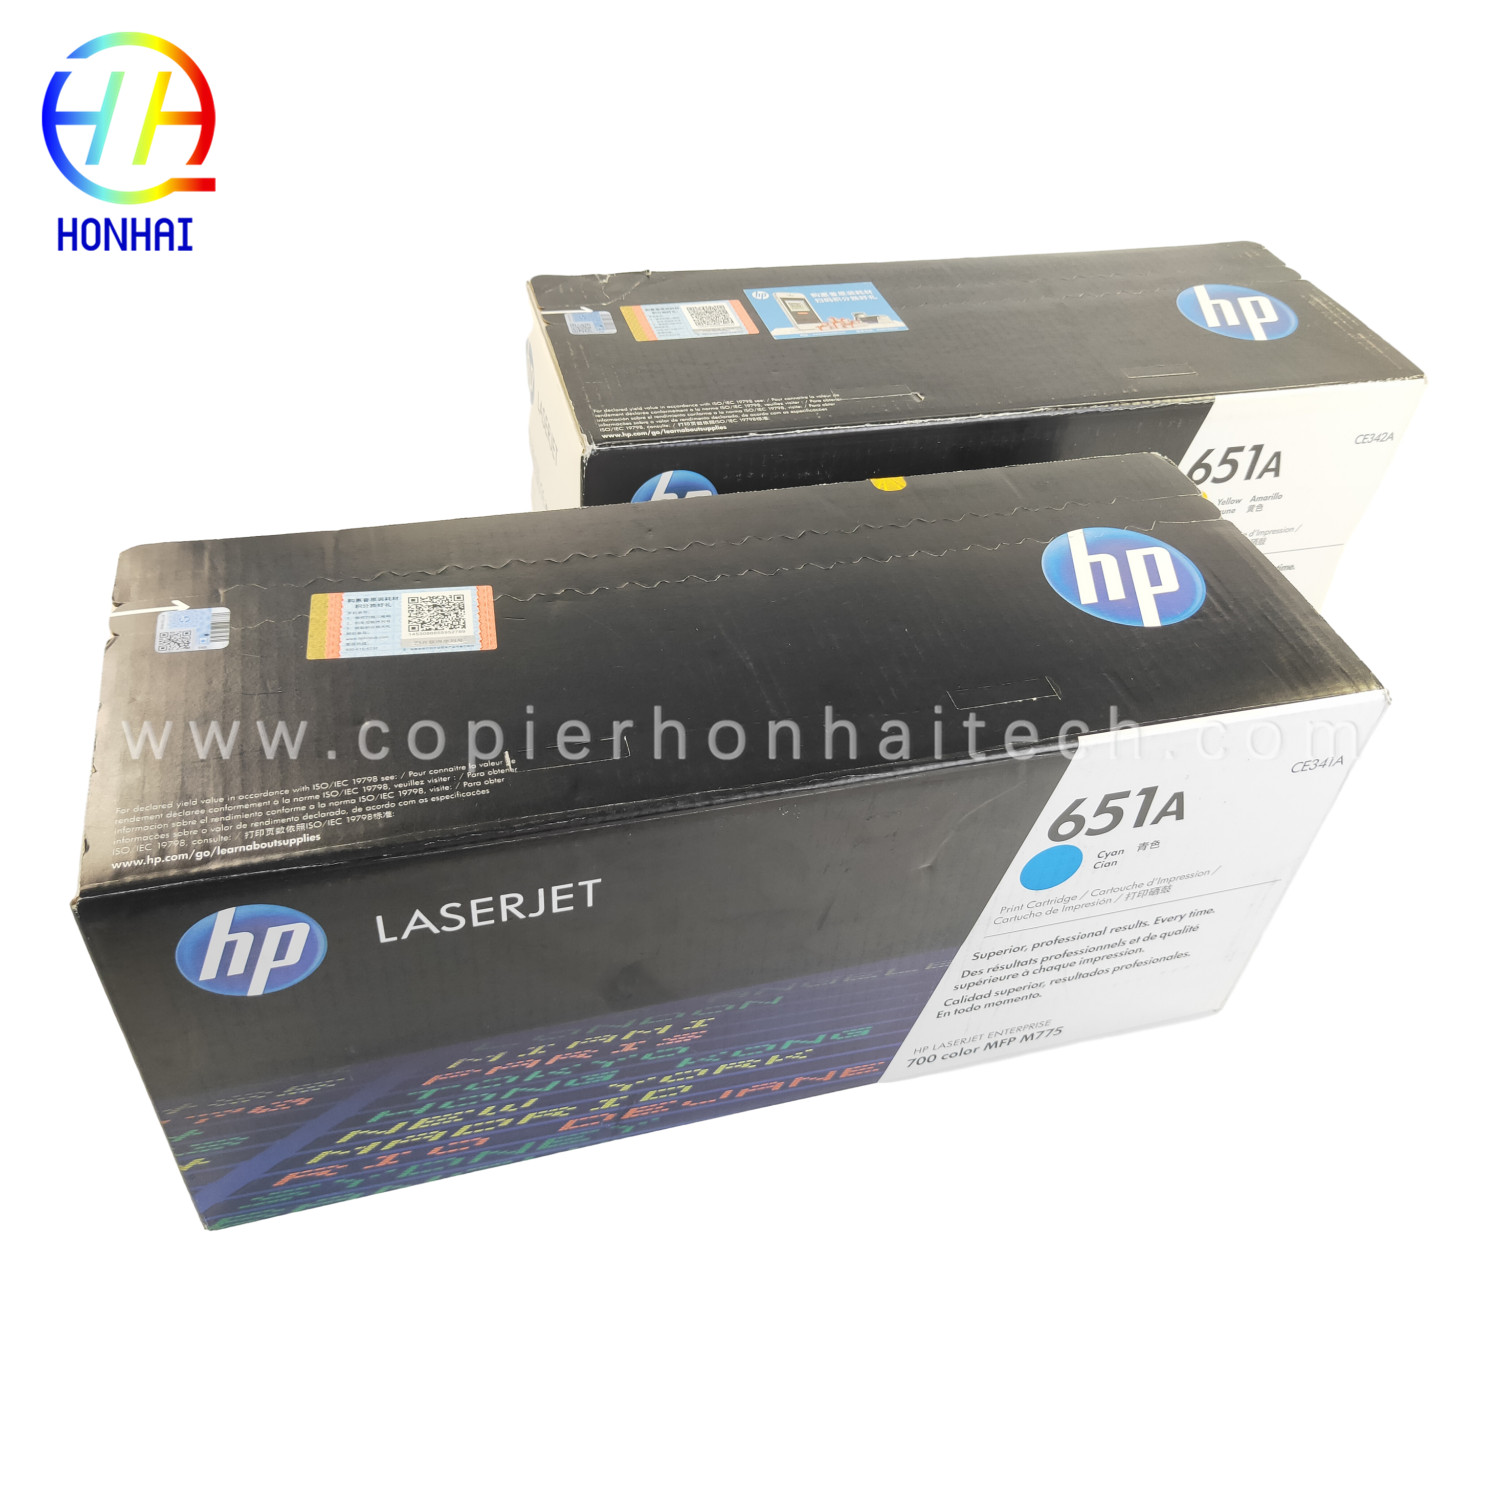 https://www.copierhonhaitech.com/original-toner-cartridge-for-hp-laserjet-enterprise-700-color-mfp-m775-series-651a-ce341a-cyan-ce342ac-white-16000-page-product/